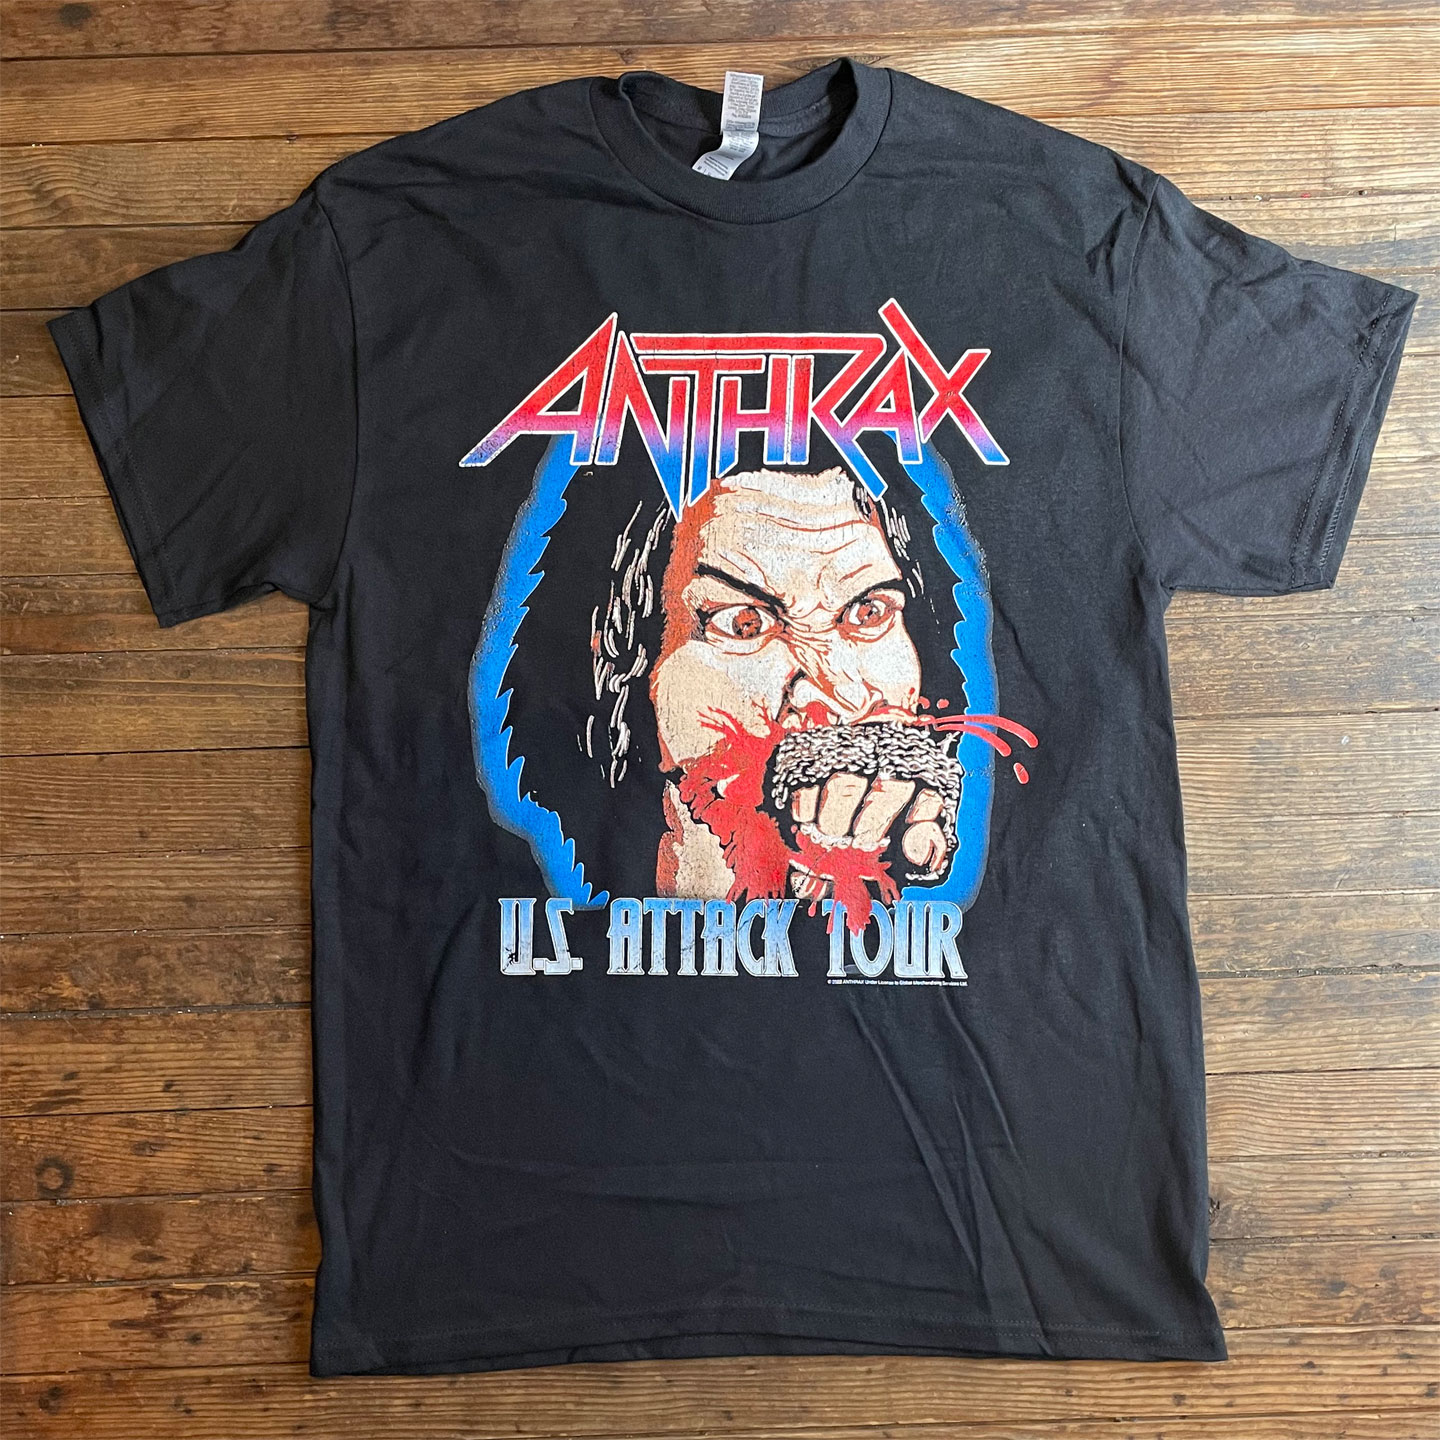 ANTHRAX Tシャツ US ATTACK TOUR オフィシャル！ 